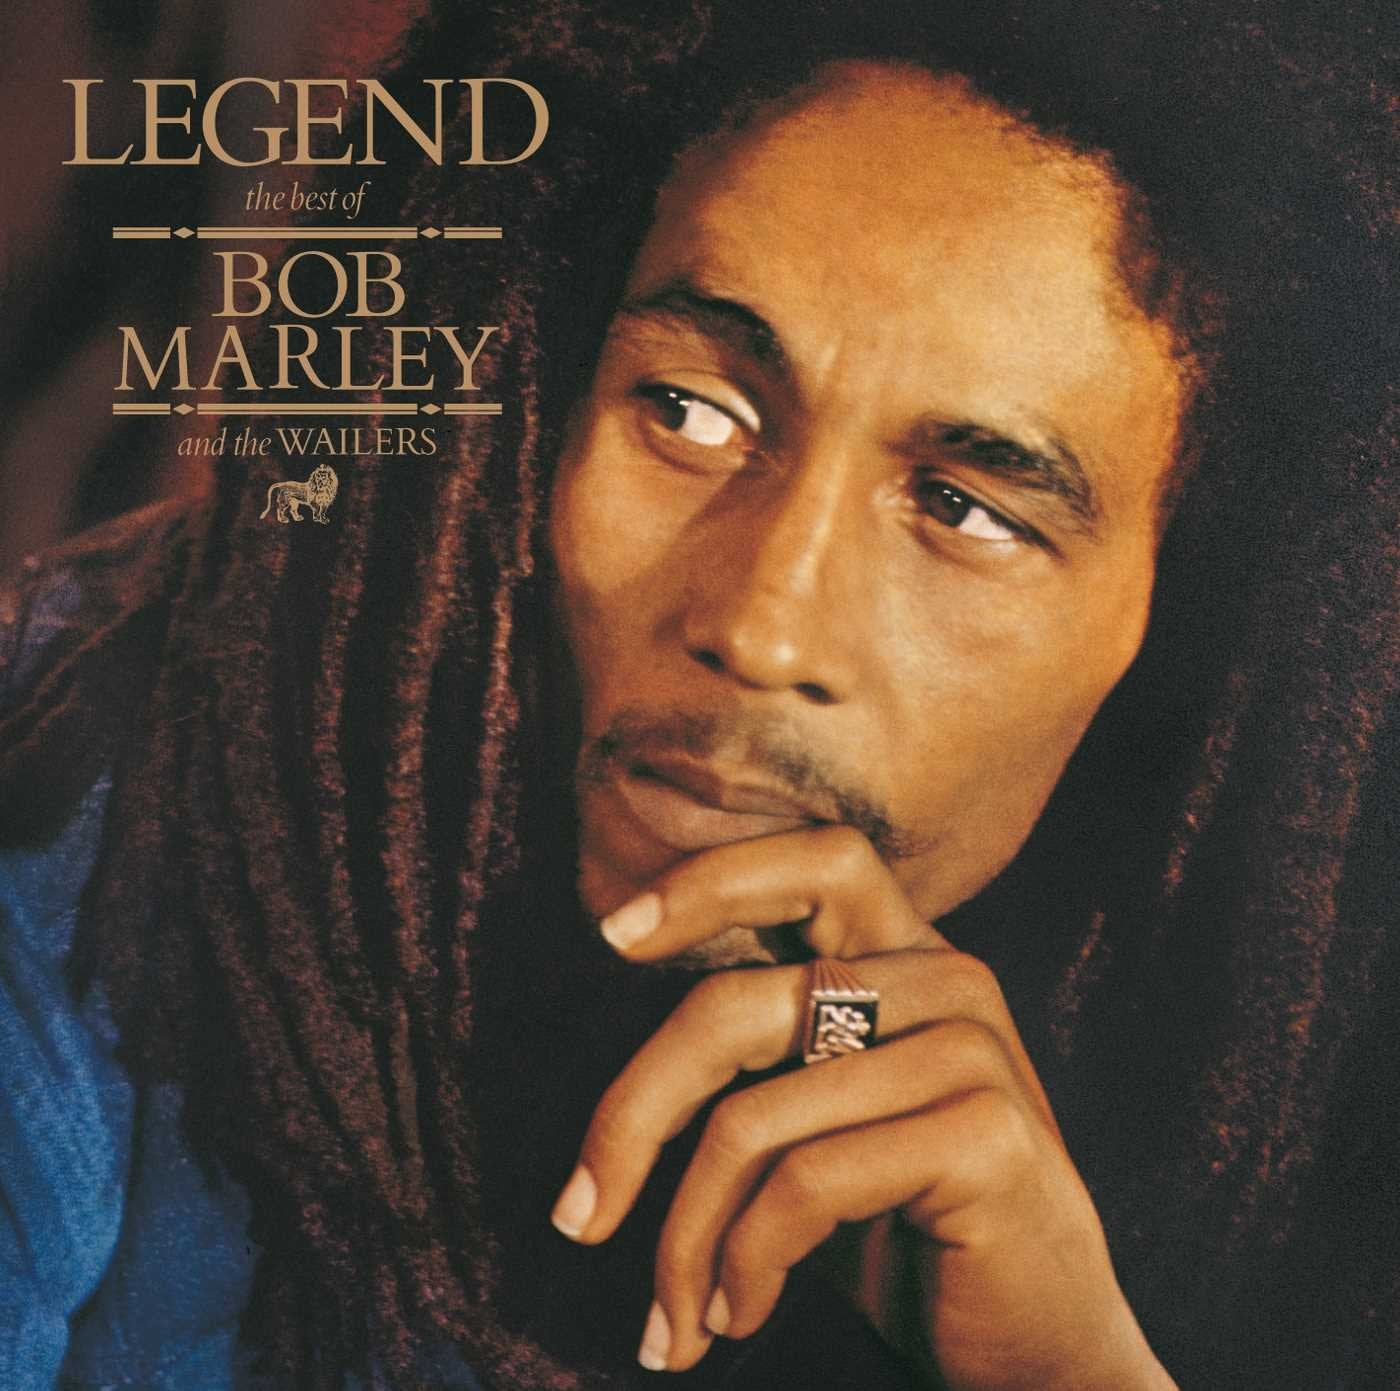 BOB MARLEY - LEGEND [REISSUE] - VINYL LP